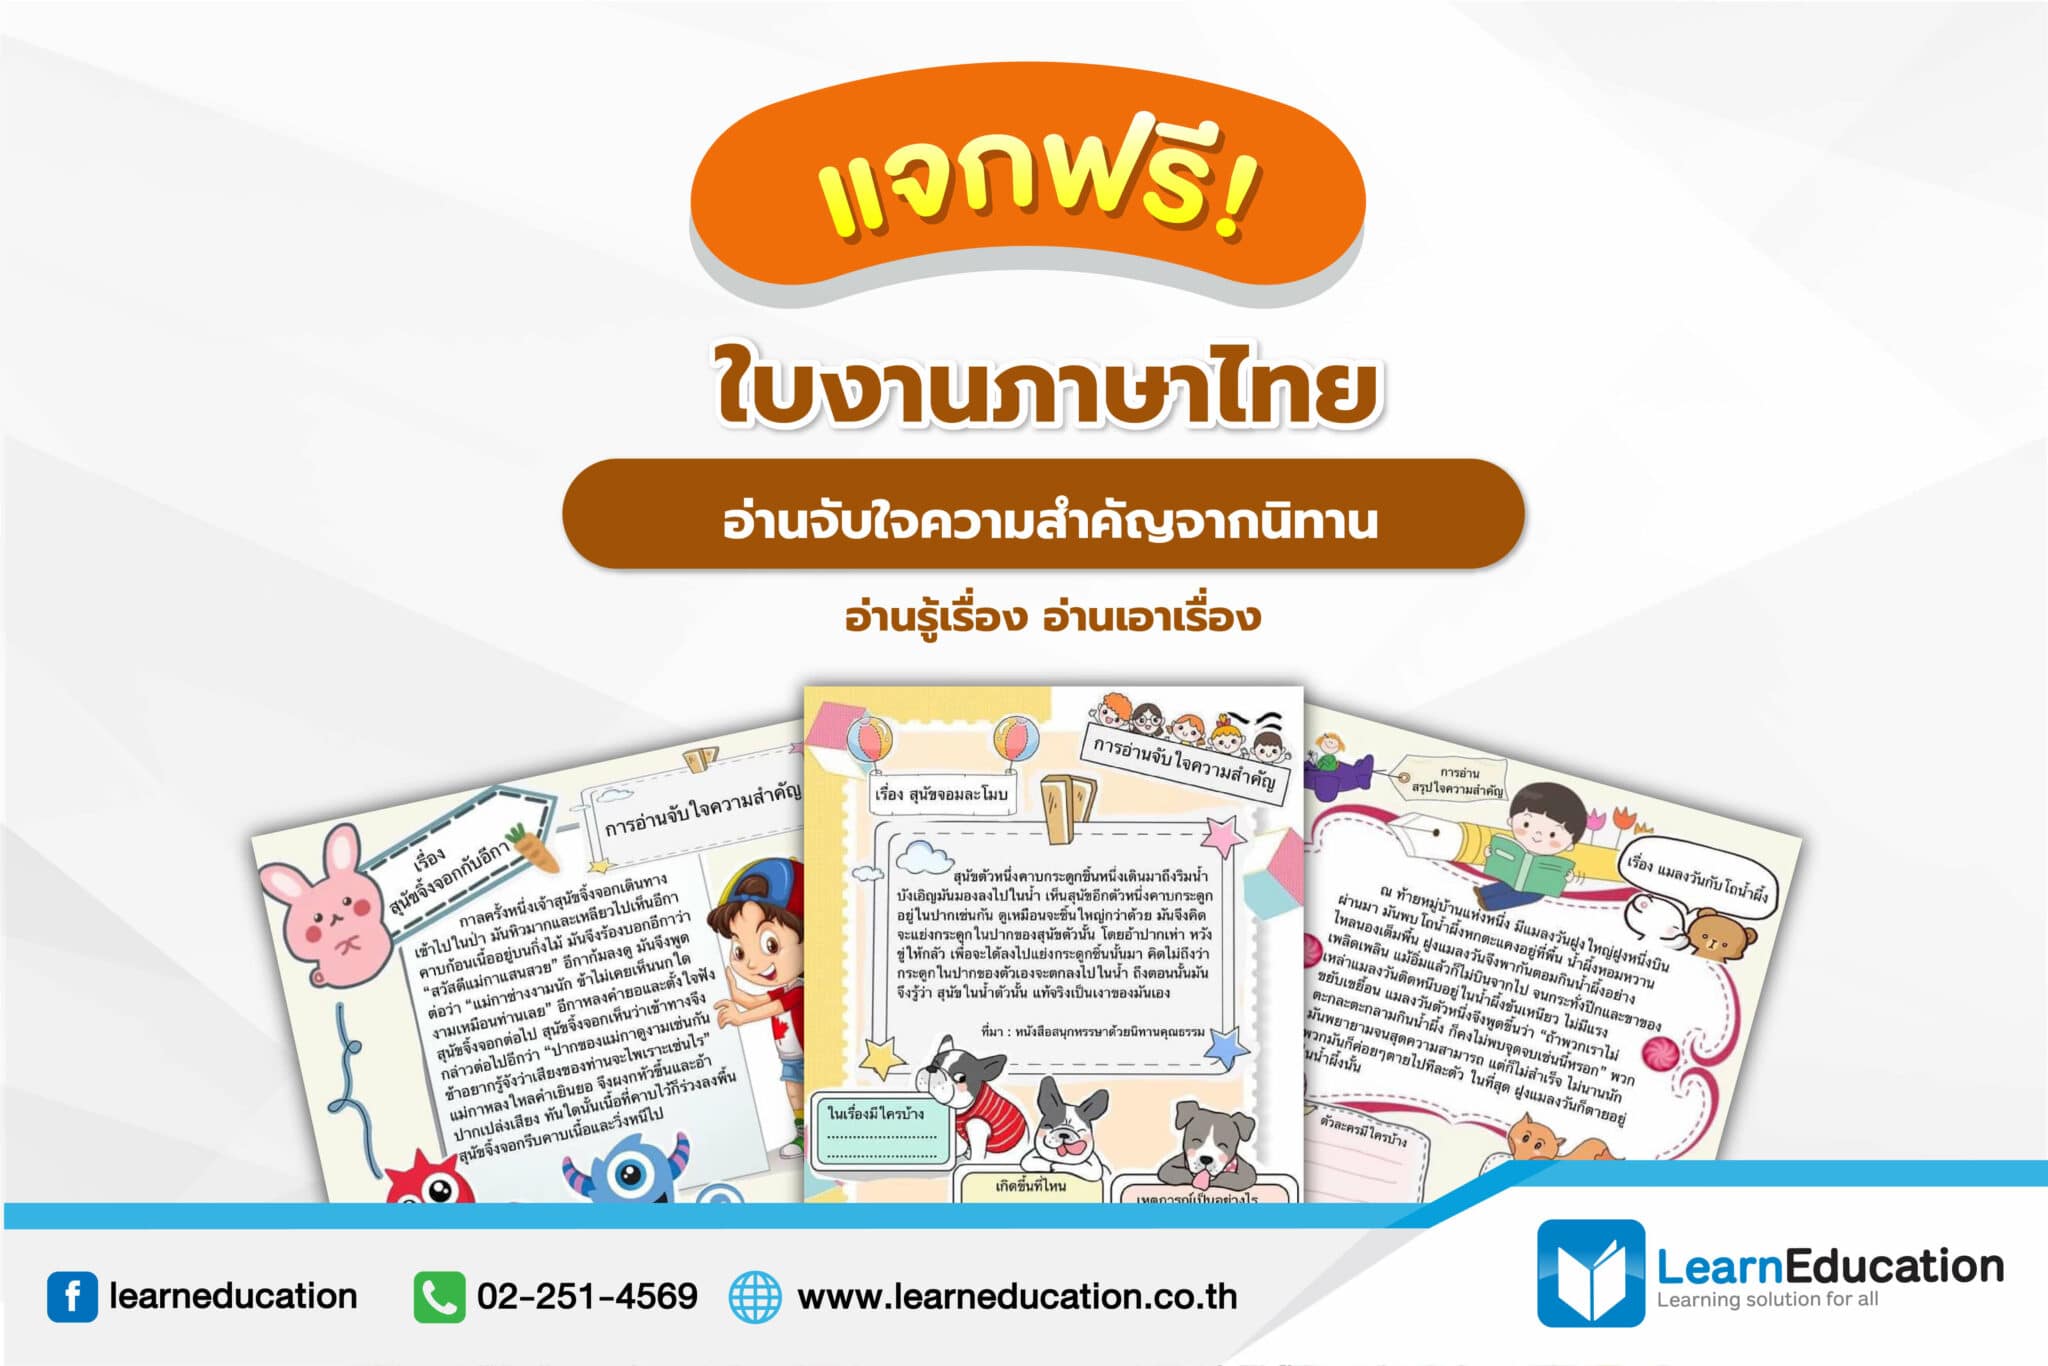 แจก! ใบงานภาษาไทย อ่านจับใจความสำคัญจากนิทาน อ่านรู้เรื่อง อ่านเอาเรื่อง -  Learn Education